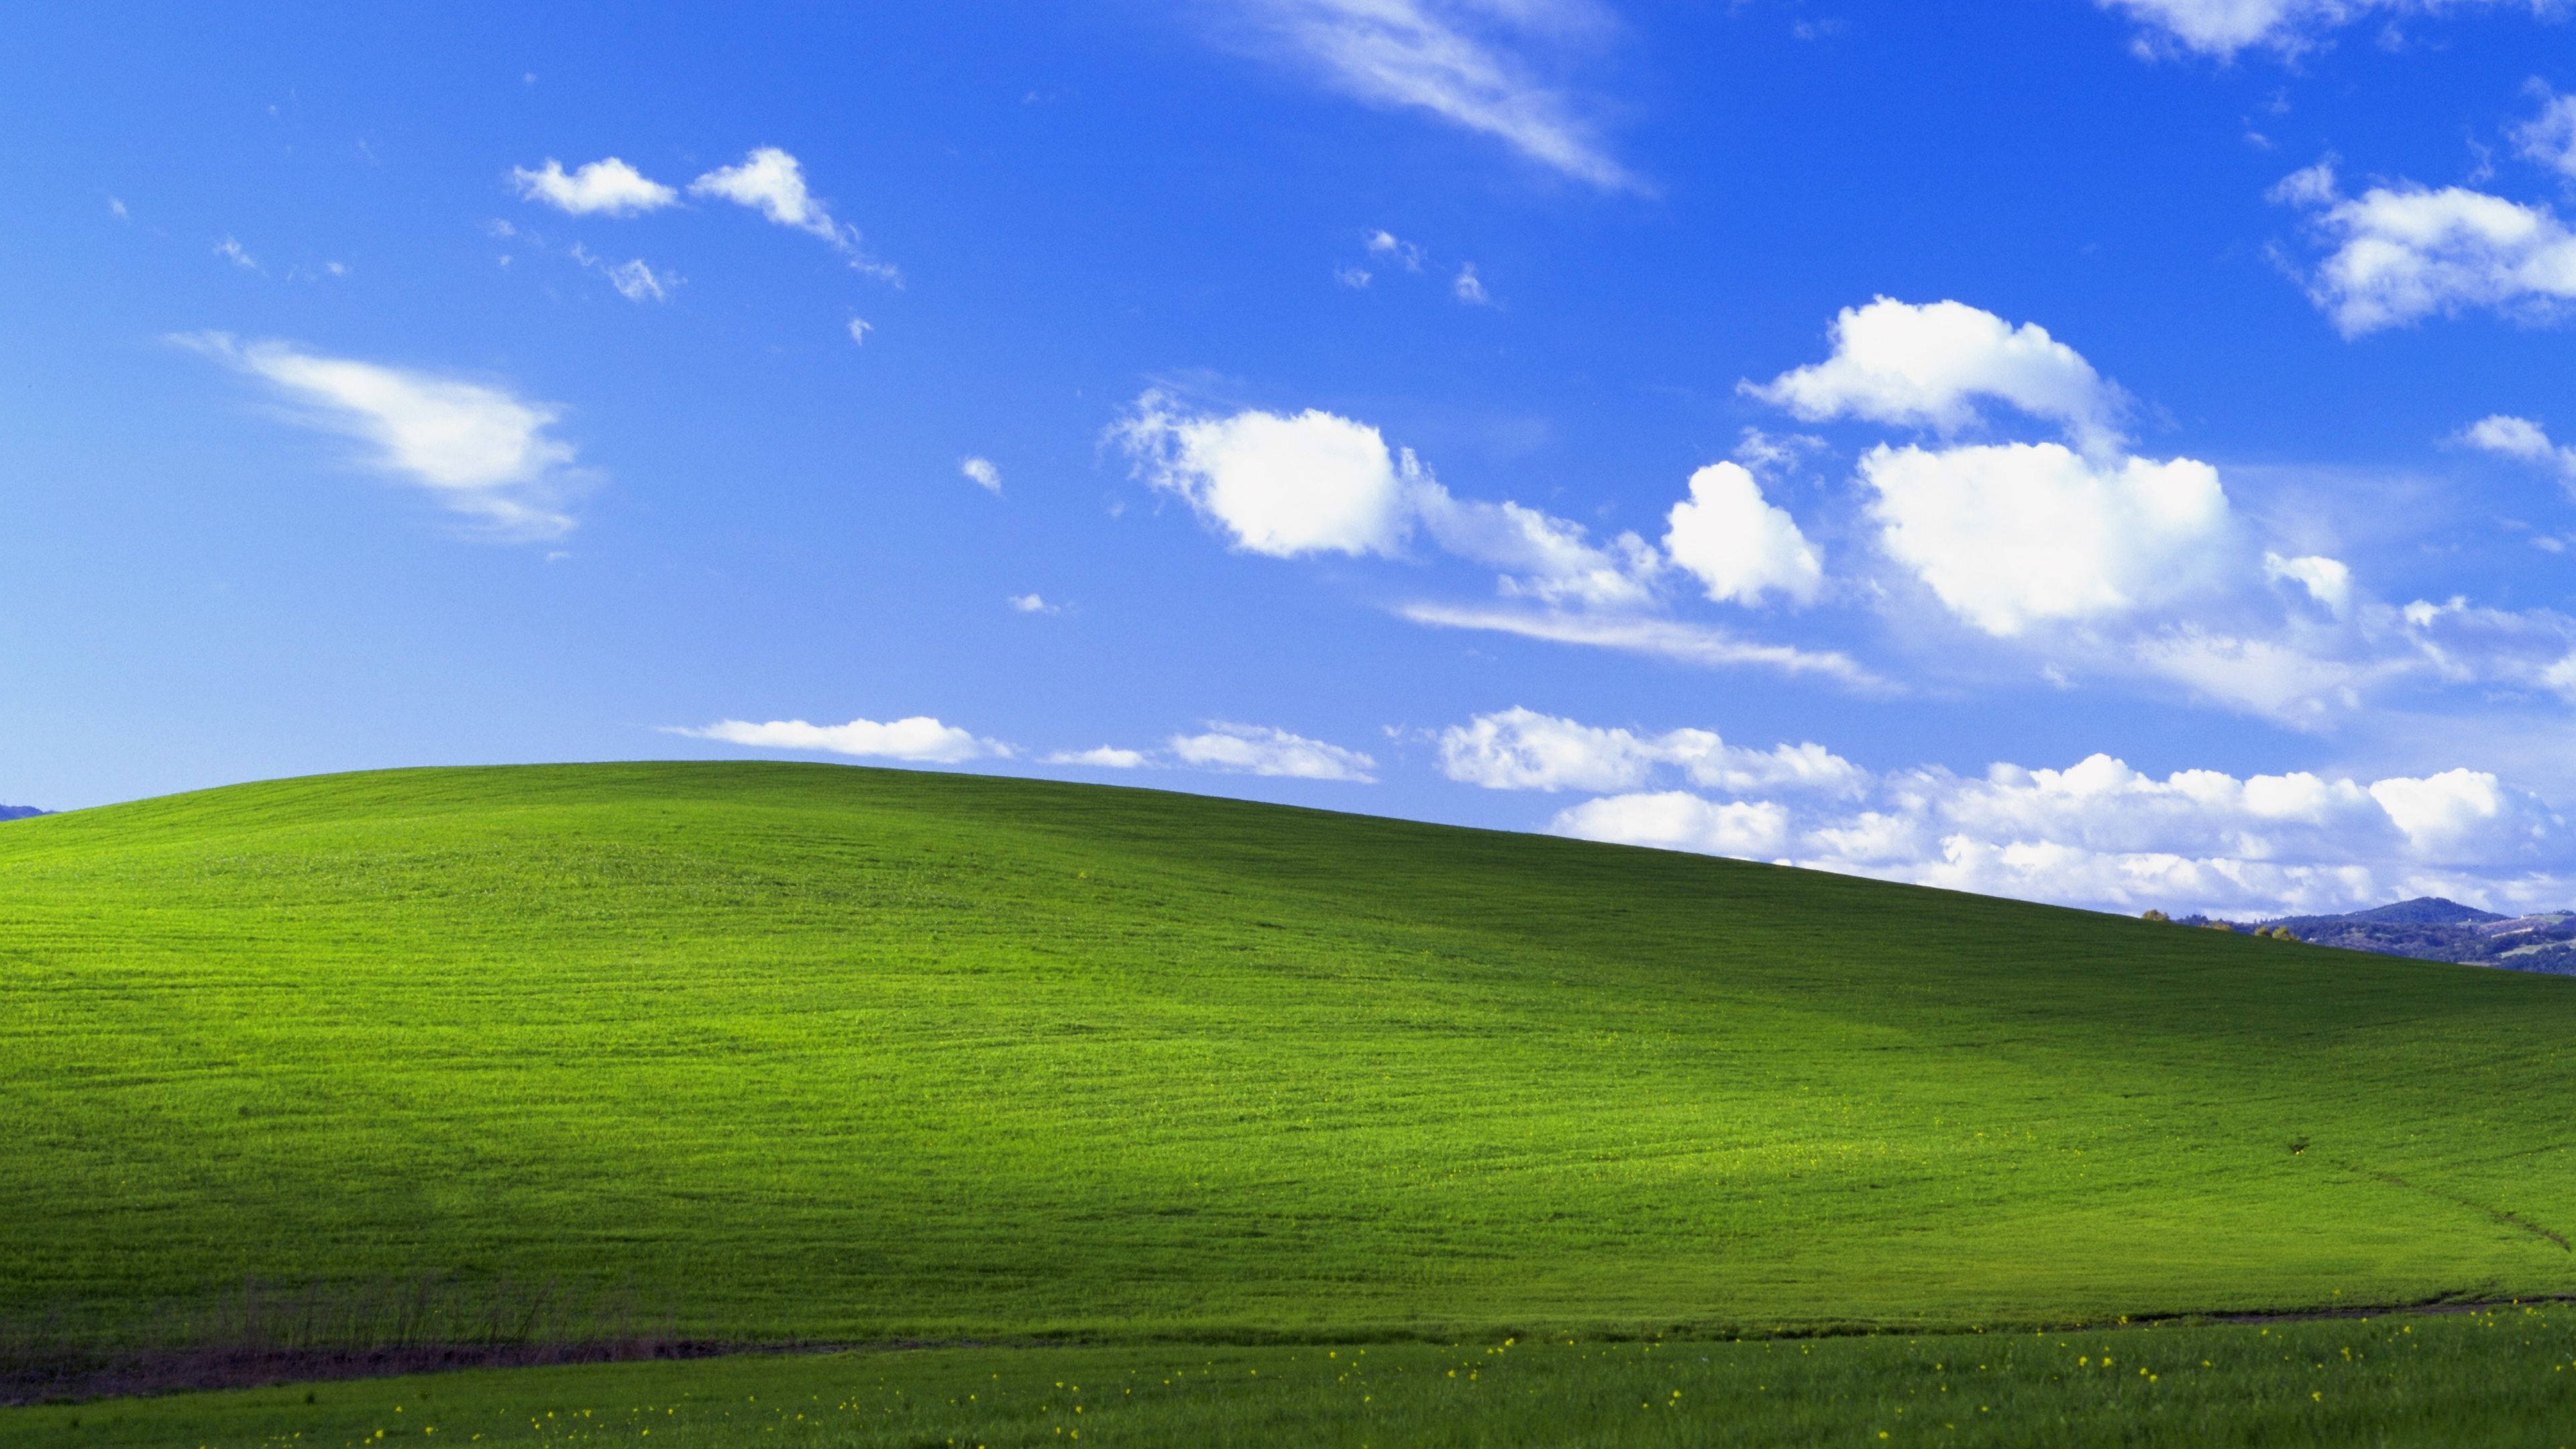 Hãy tải về những bức hình nền Windows XP để tận hưởng những ký ức tuổi thơ tuyệt đẹp của bạn. Trở lại với thời đại yên bình, bức hình nền emerald và Bliss sẽ mang lại cảm giác nhẹ nhàng và tĩnh lặng. Hãy truy cập ảnh liên quan để khám phá thêm nhé!